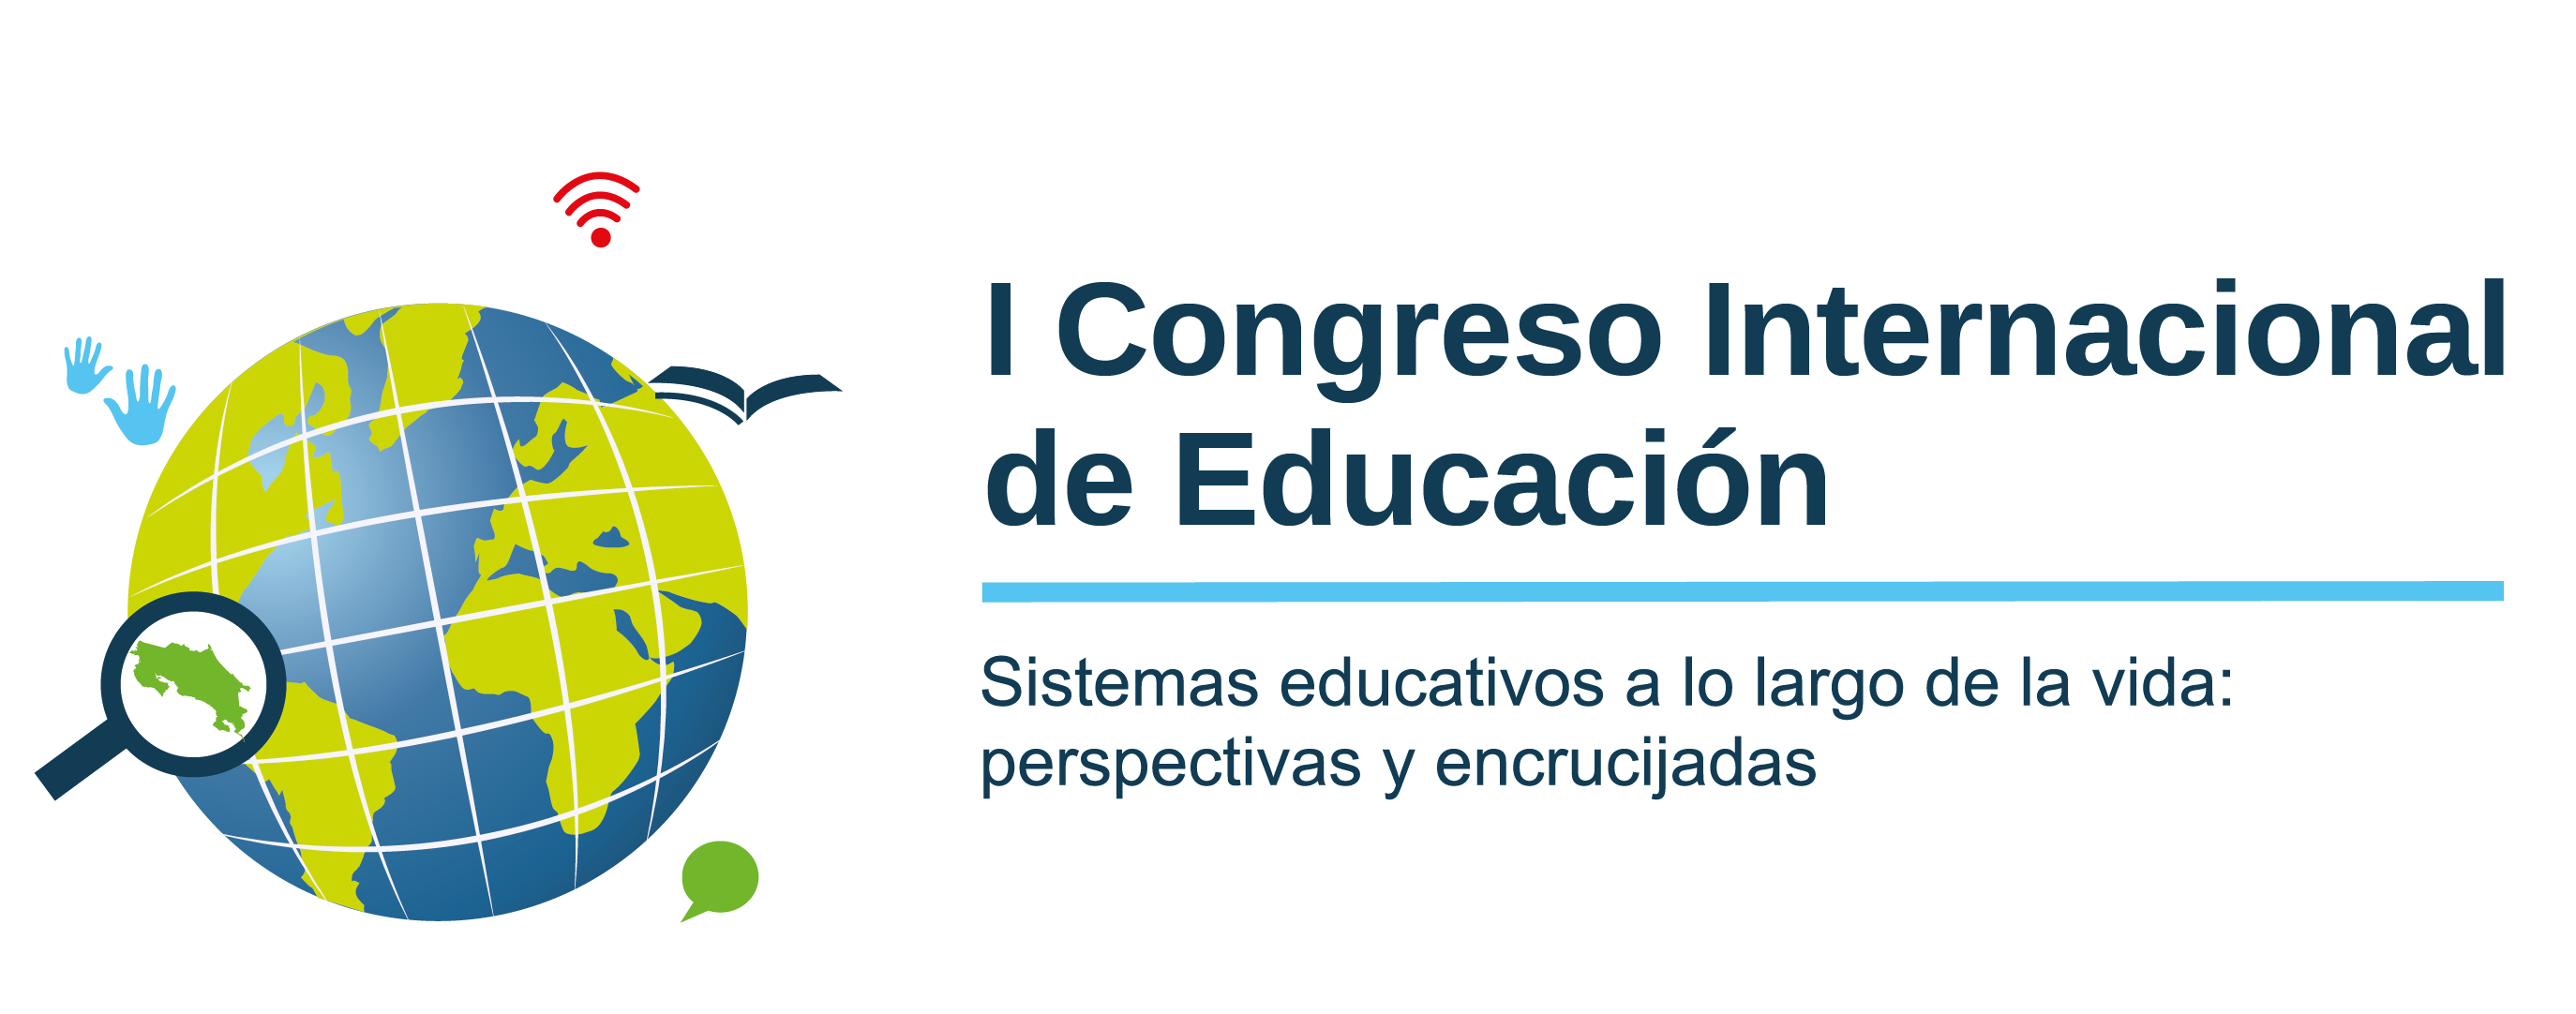 Reprogramación del I Congreso Internacional de Educación: Sistemas educativos a lo largo de la vida, perspectivas y encrucijadas